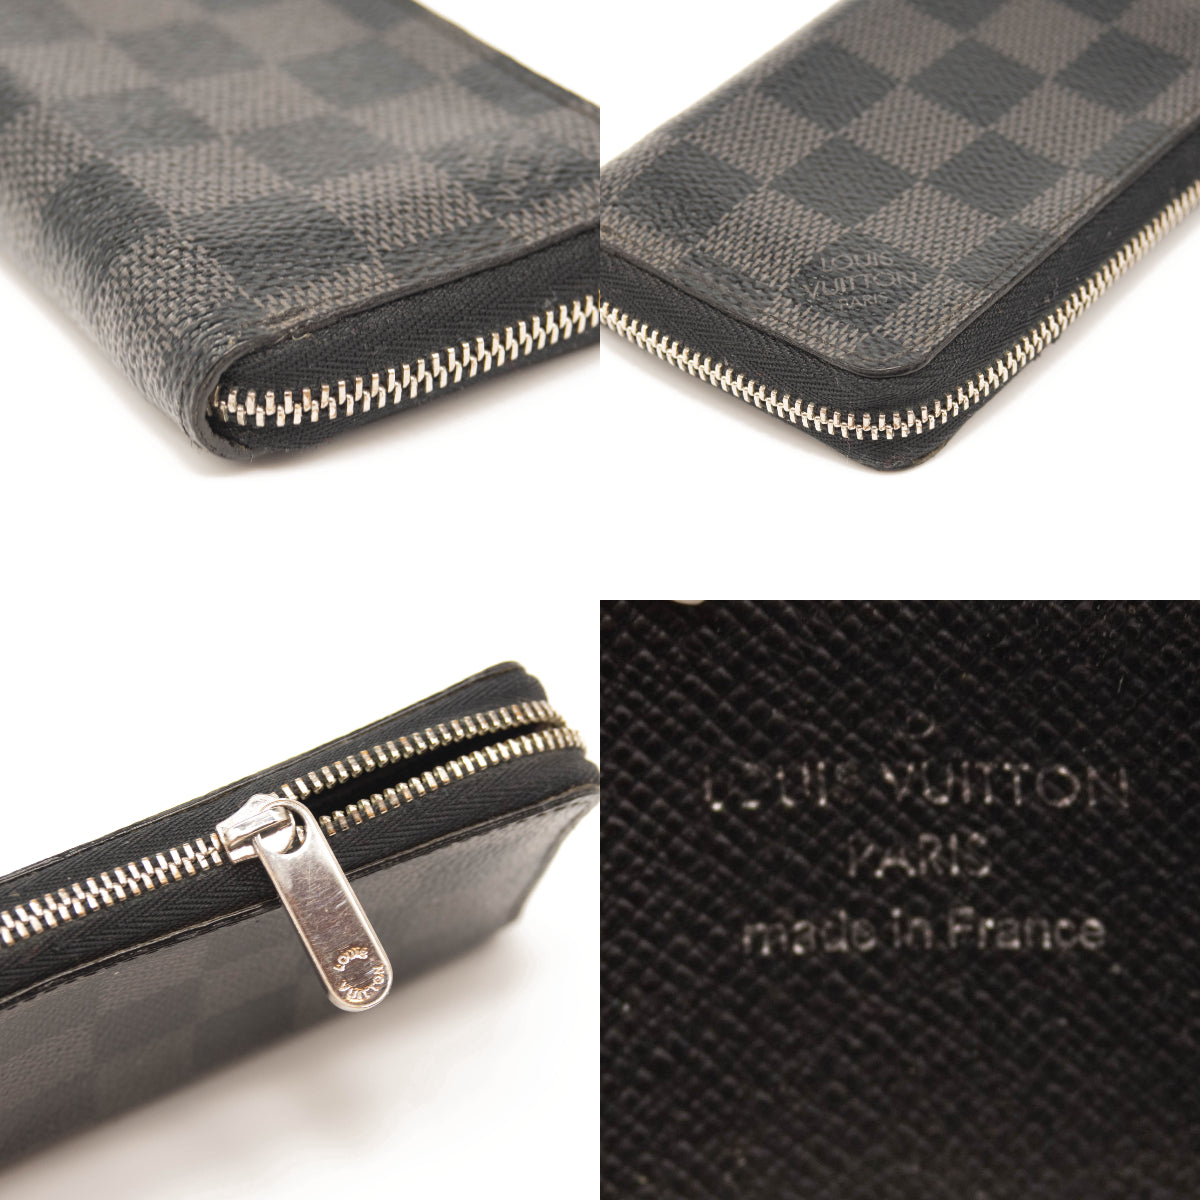 Louis Vuitton Damier Zip Wallet